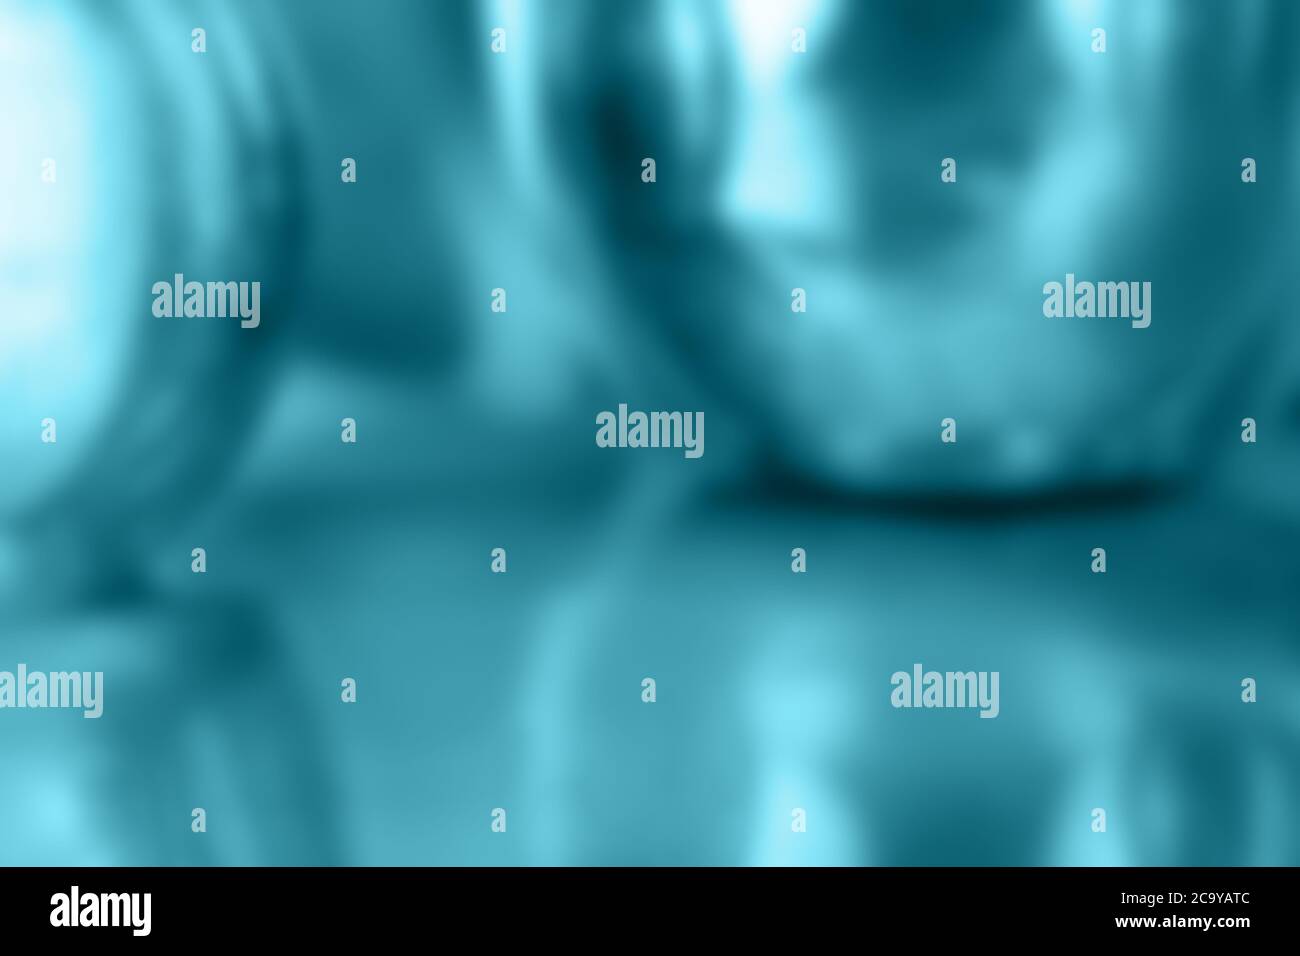 fondo digital abstracto en azul turquesa iridiscente con formas esféricas y reflejos Foto de stock